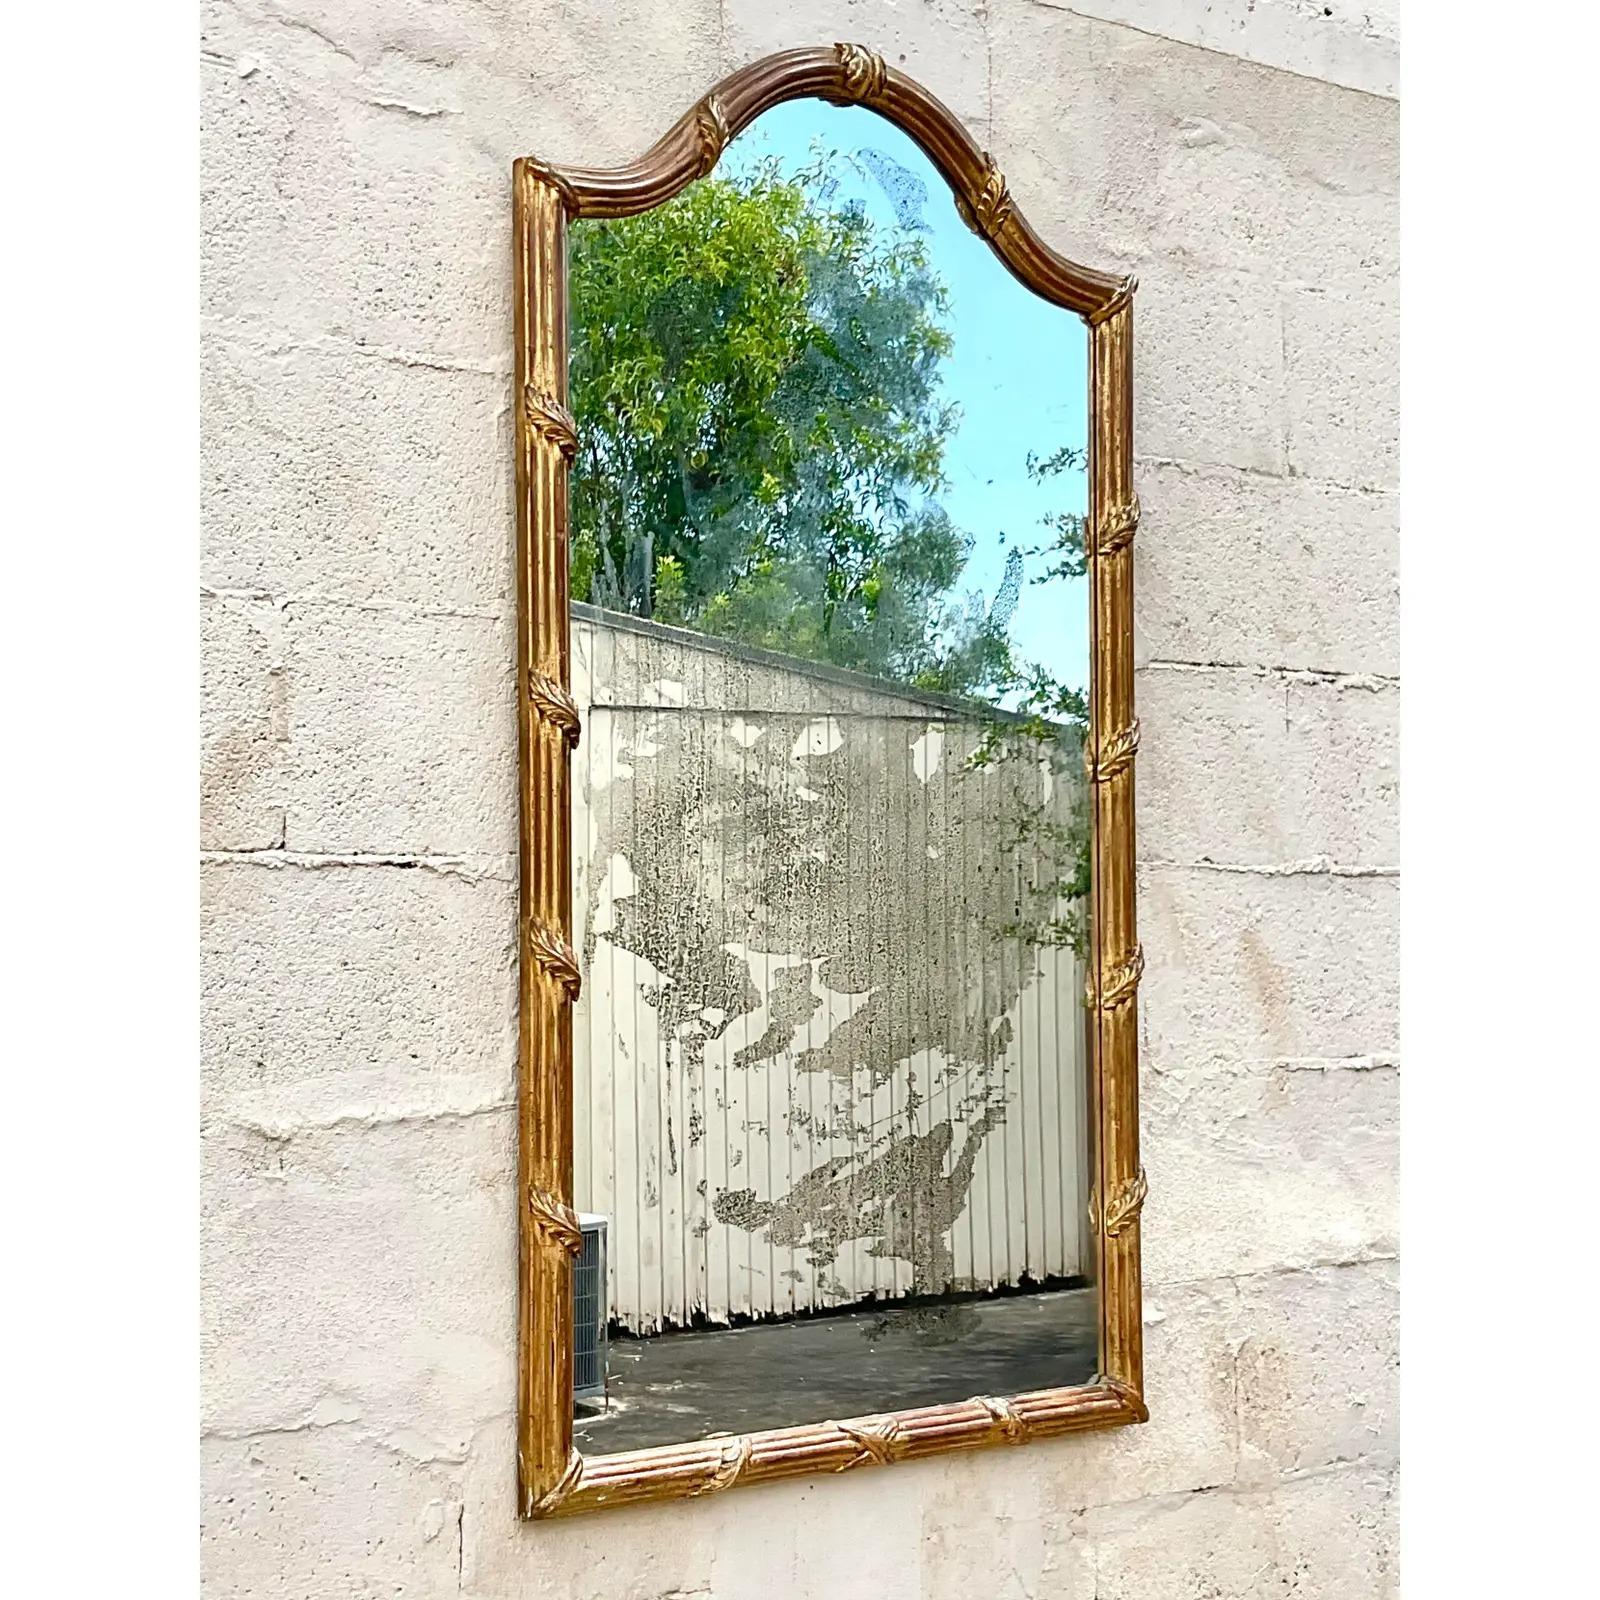 Magnifique miroir mural doré vintage. Chic détail de laurier enveloppé sur un cadre arqué. L'incroyable miroir vieilli ajoute une touche spectaculaire. Acquis d'une propriété de Palm Beach.